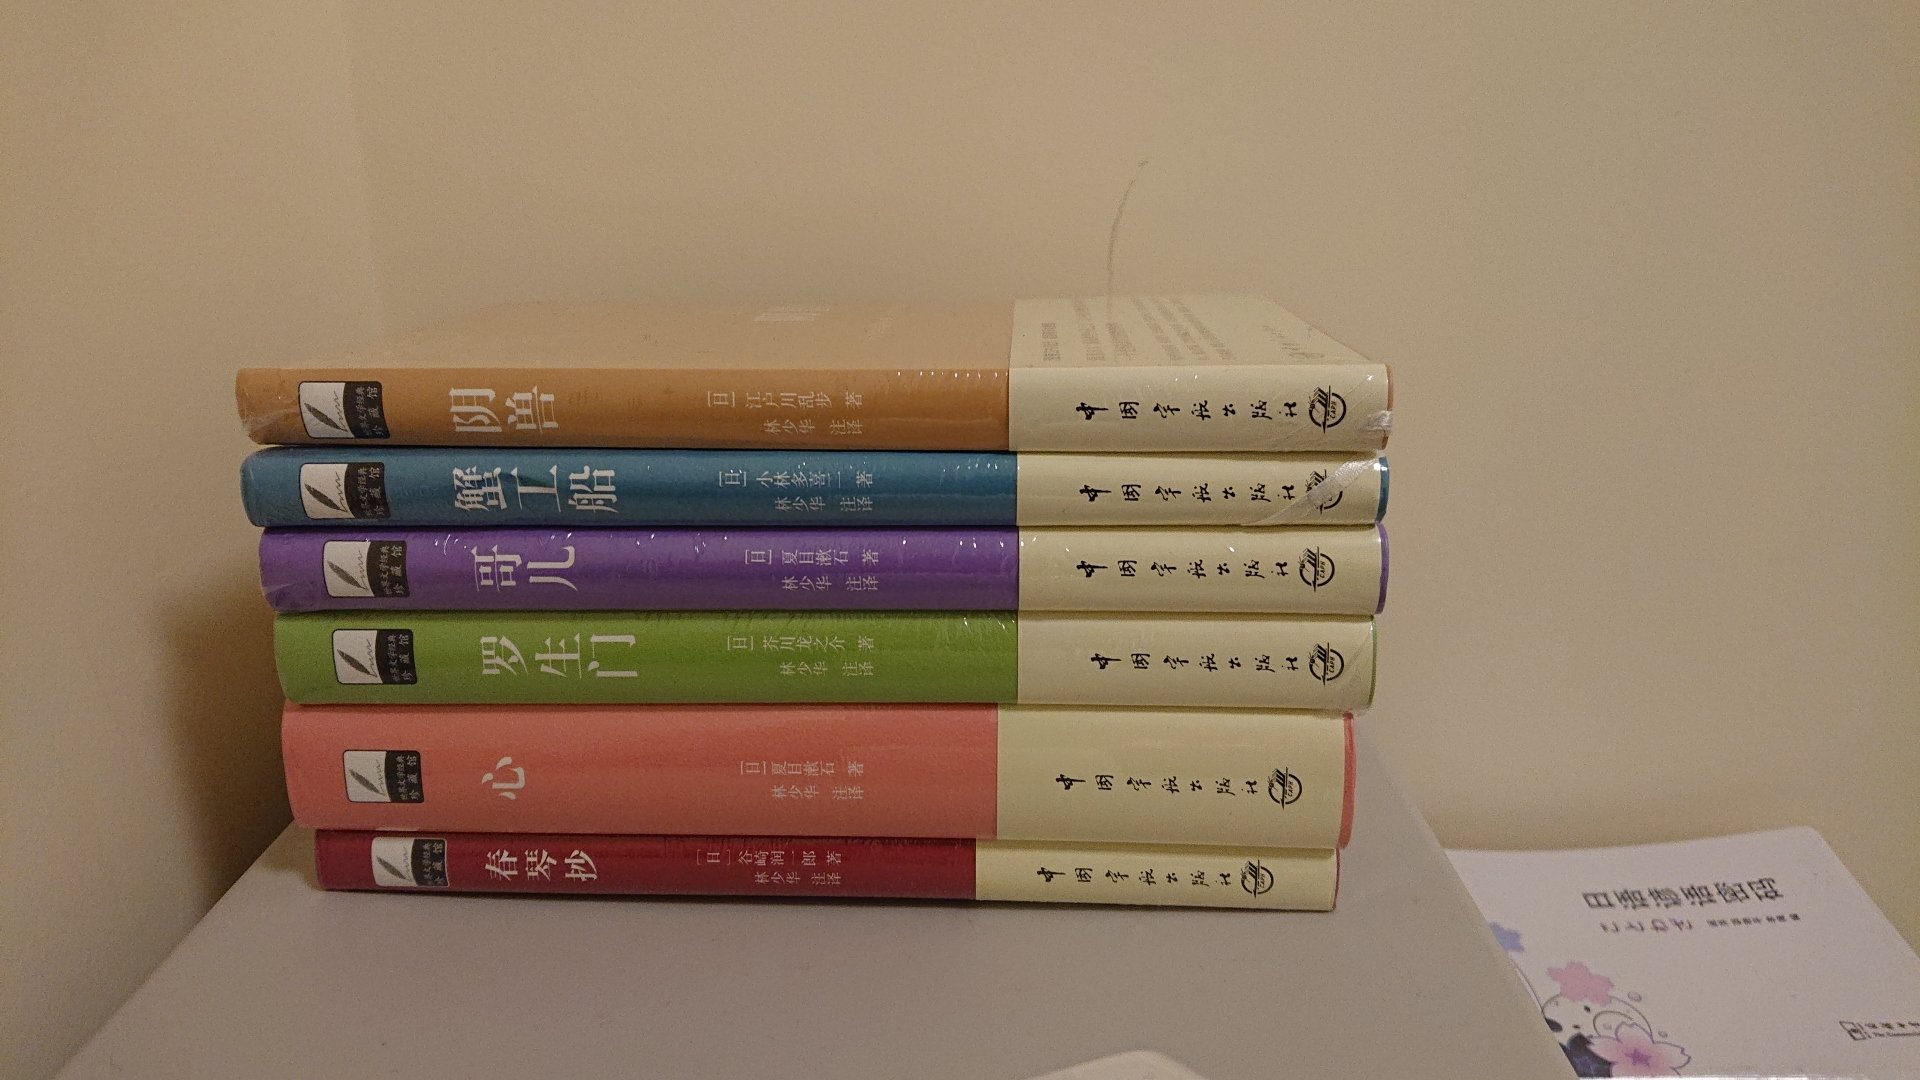 买了很多的日语学习书，我要加油学好，不能辜负了这些书。